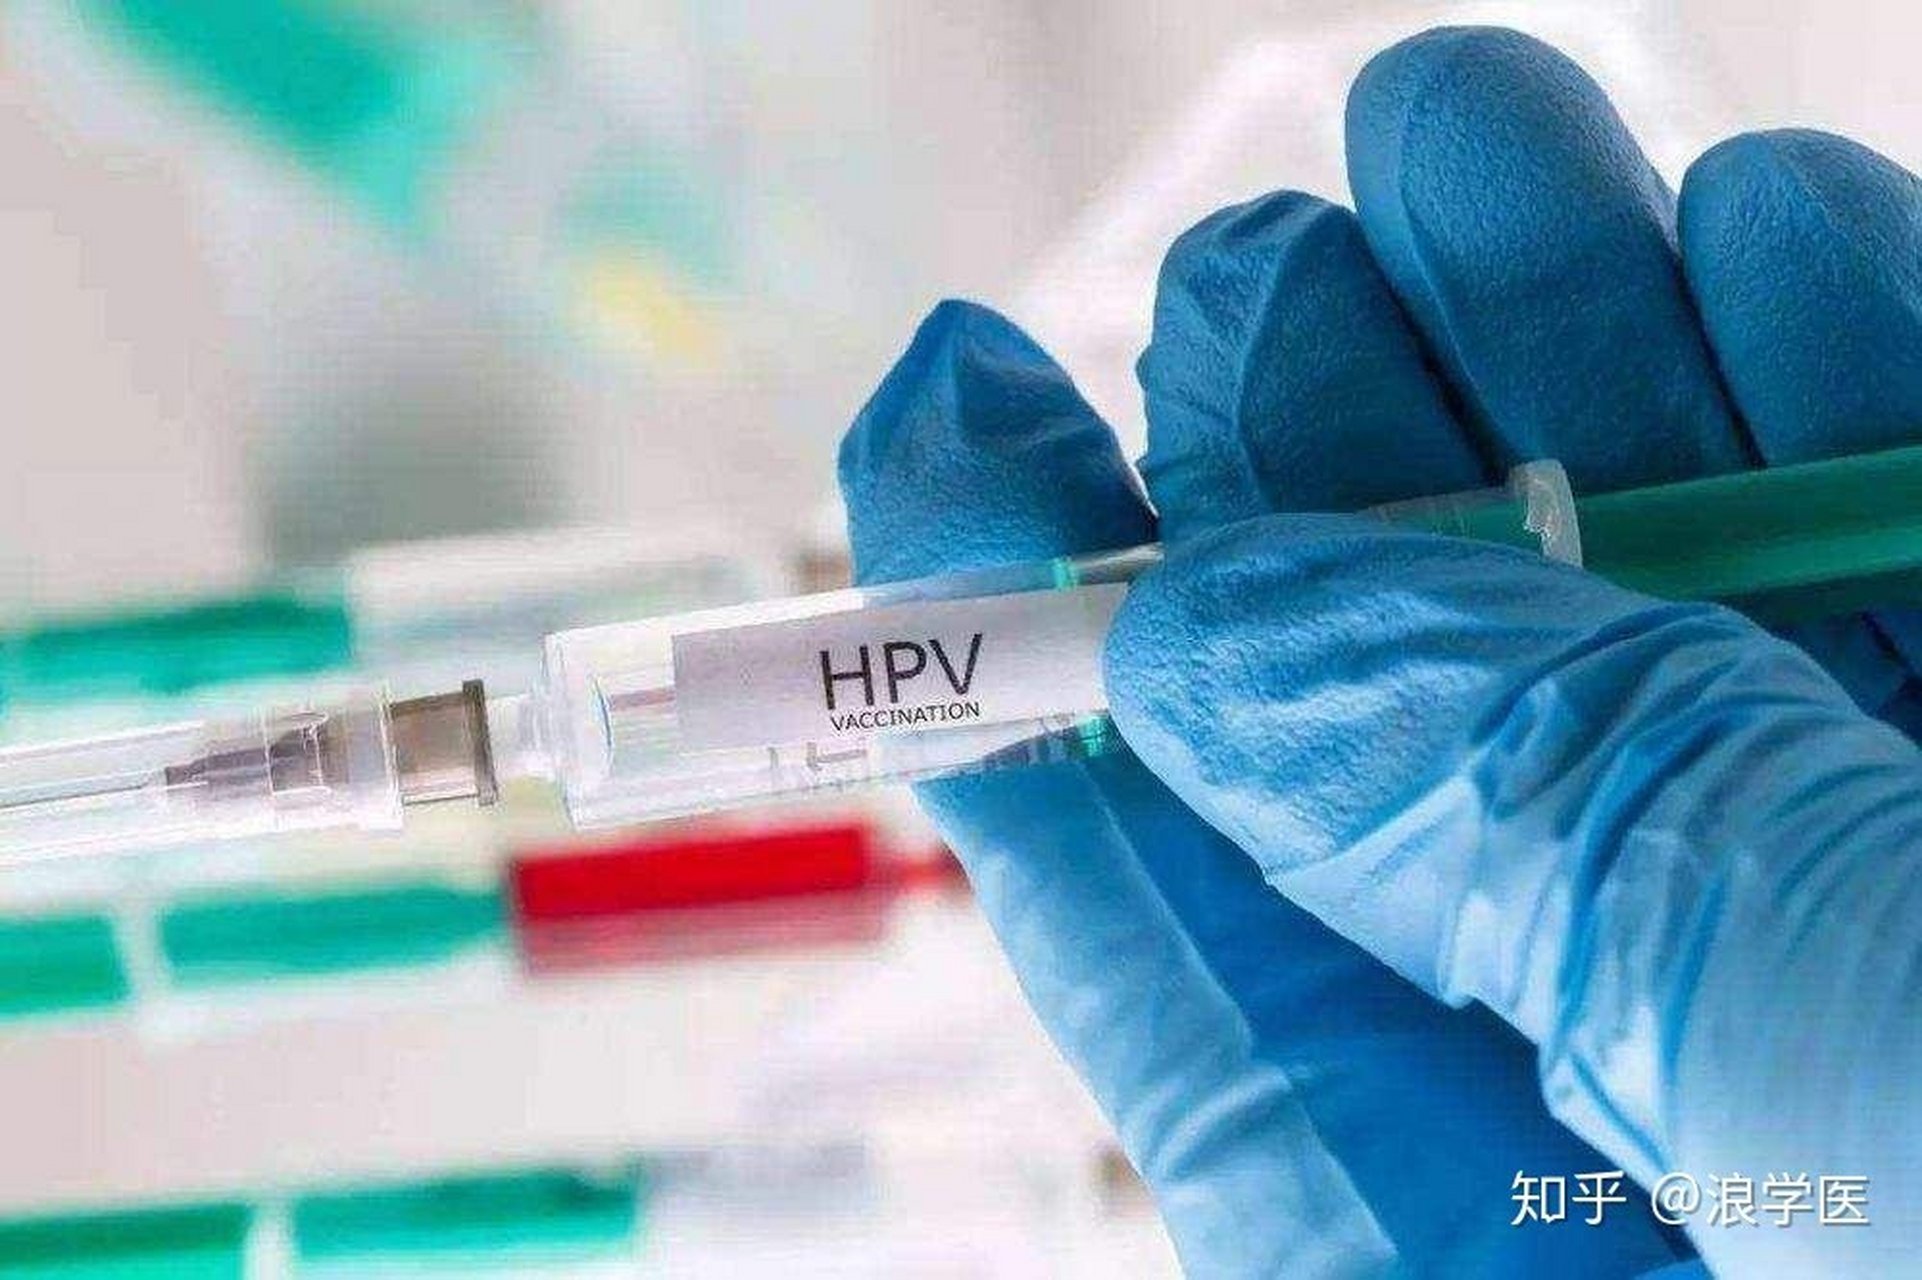 关于hpv疫苗接种禁忌症:  1对酿酒酵母和疫苗成分过敏者不能接种  2